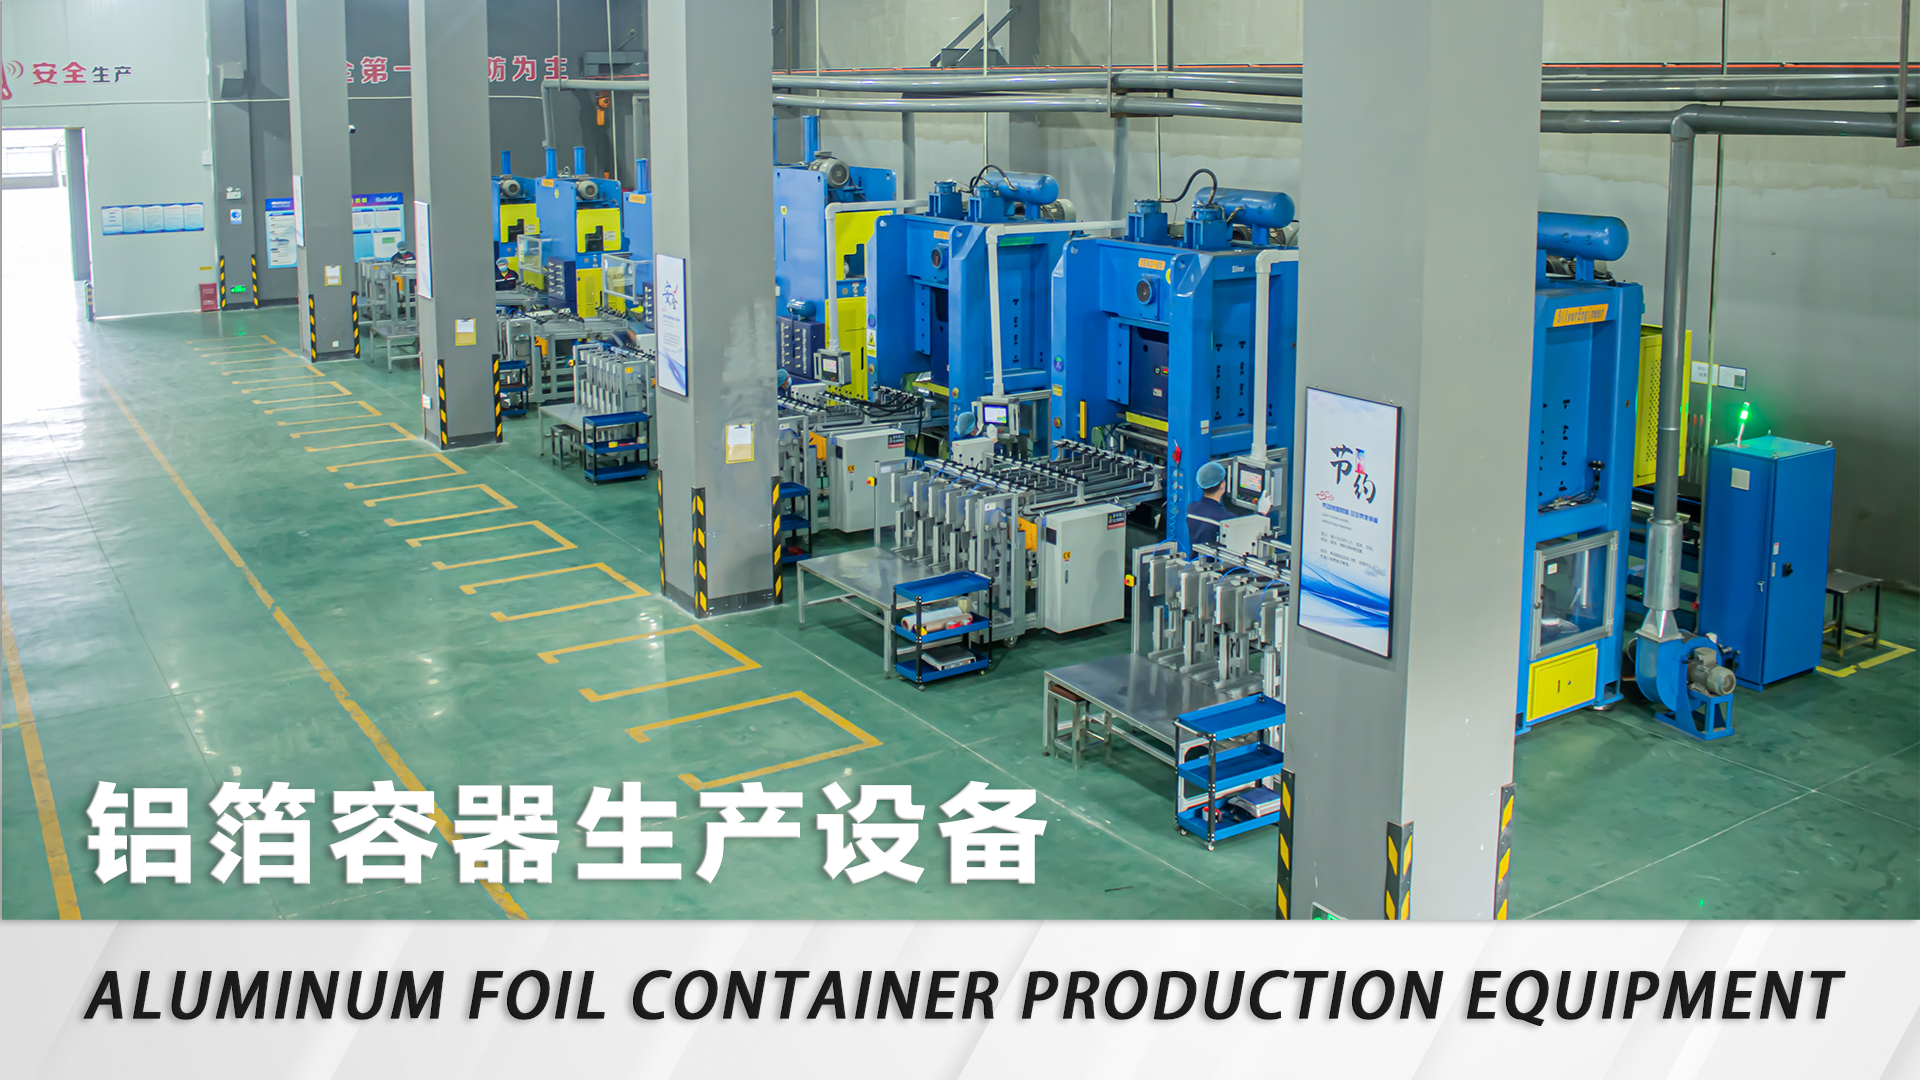 Aluminum foil container production equipment